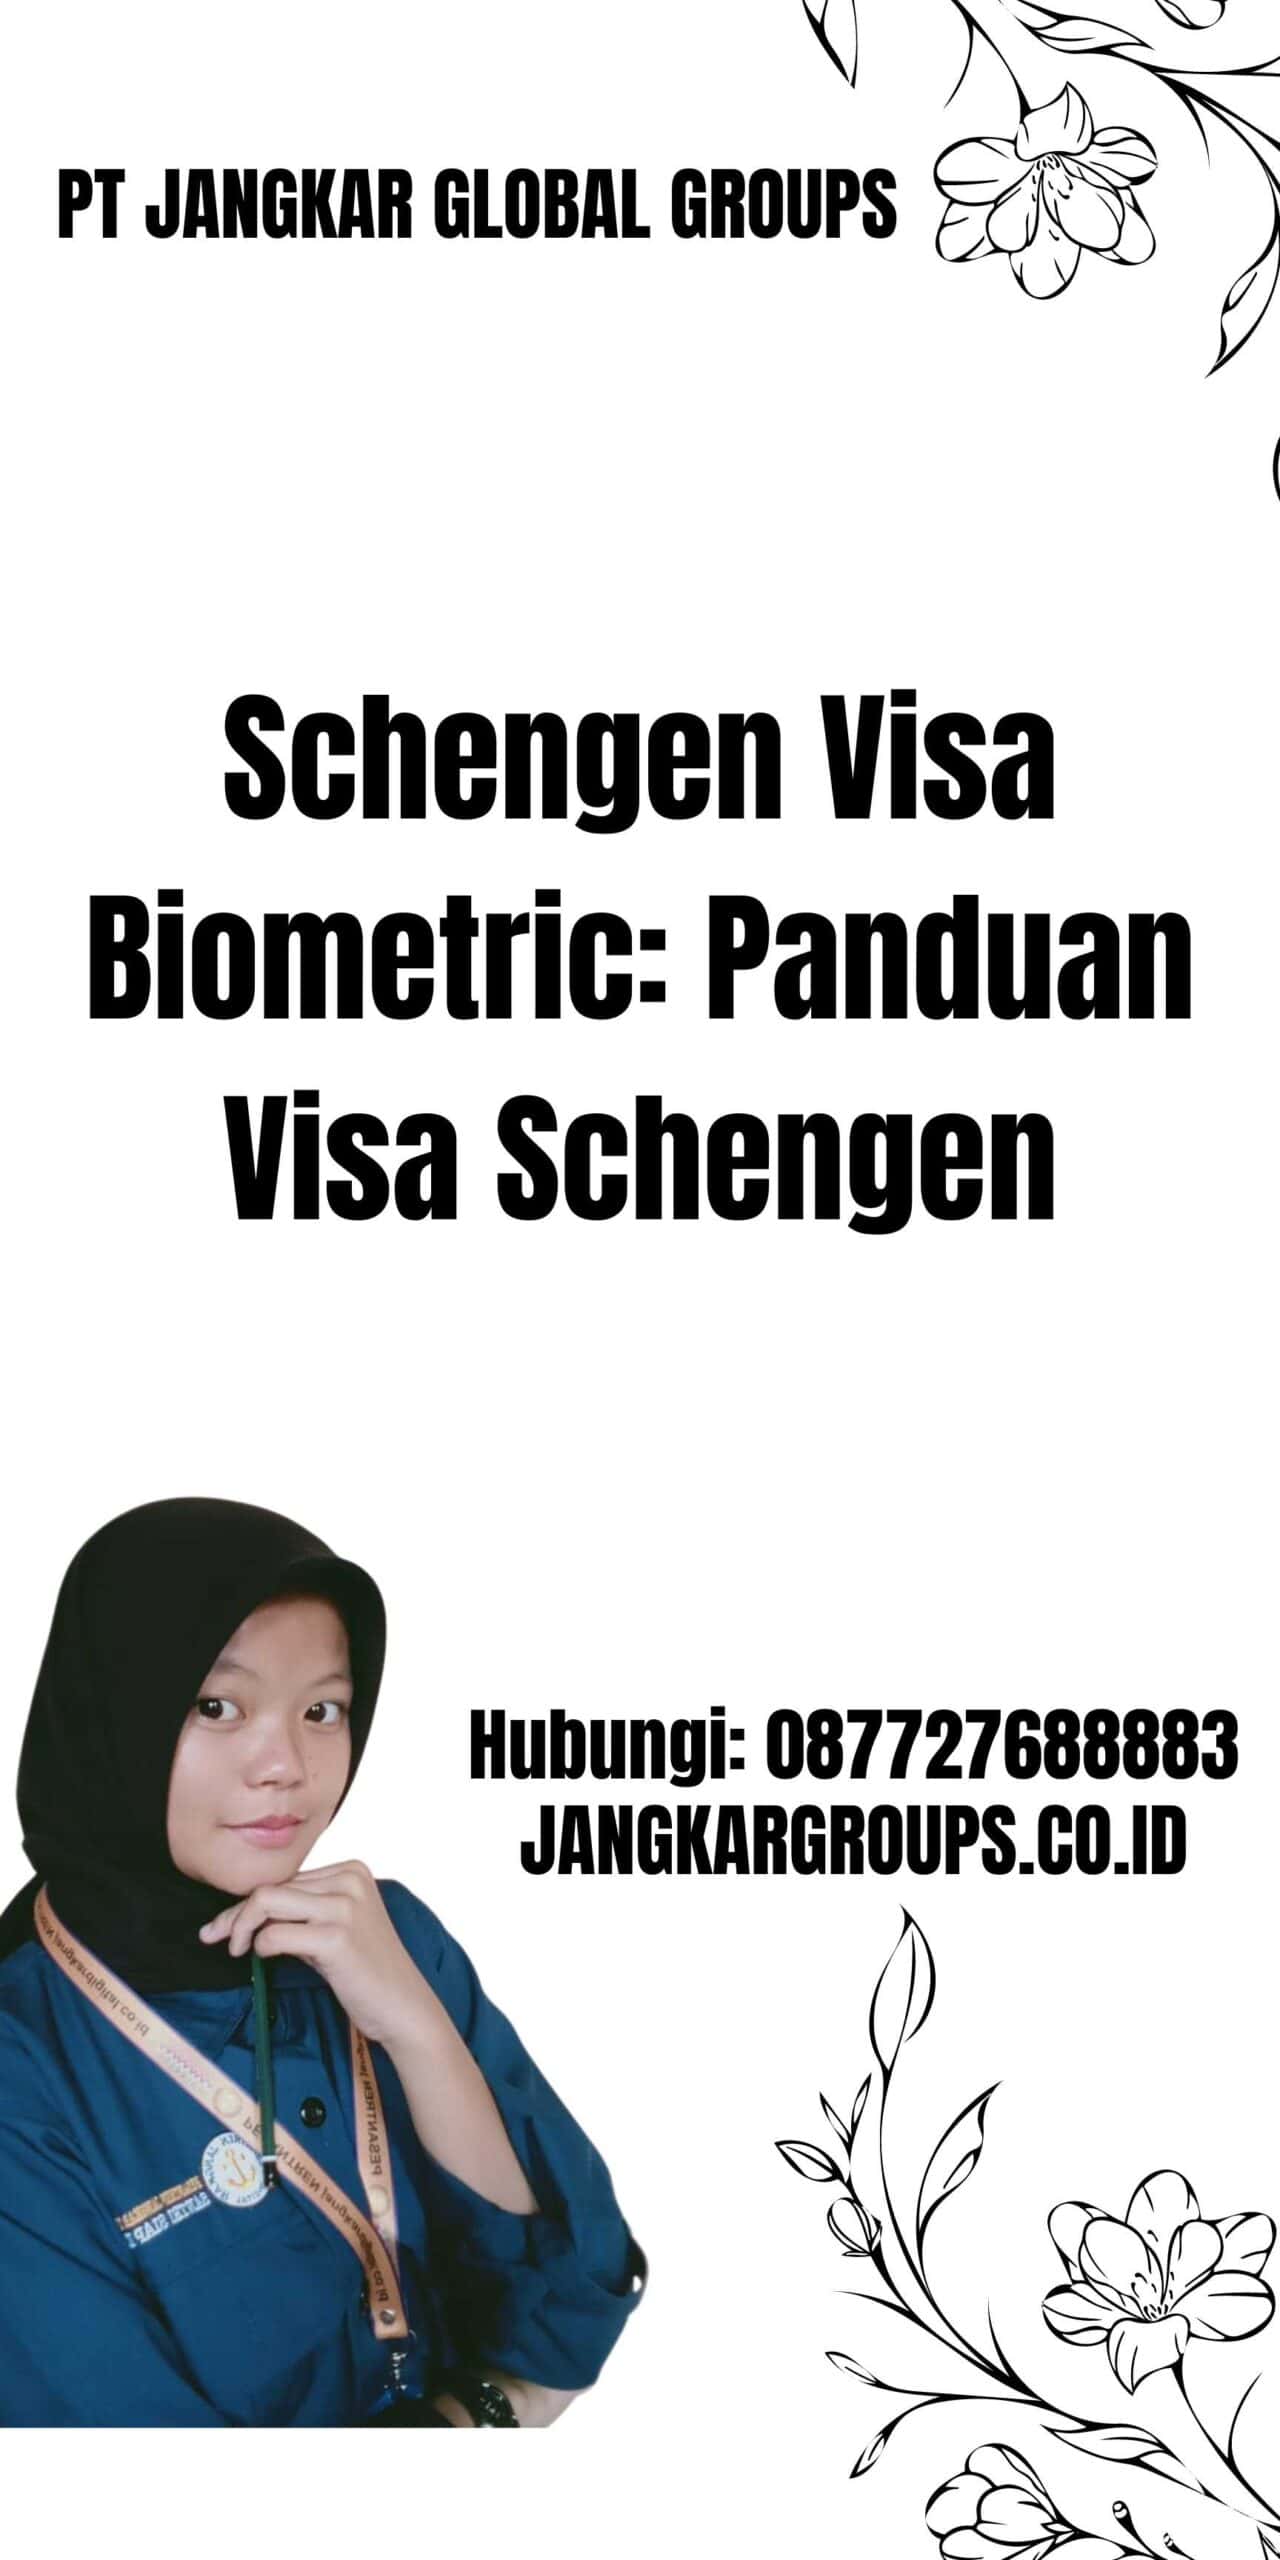 Schengen Visa Biometric: Panduan Visa Schengen